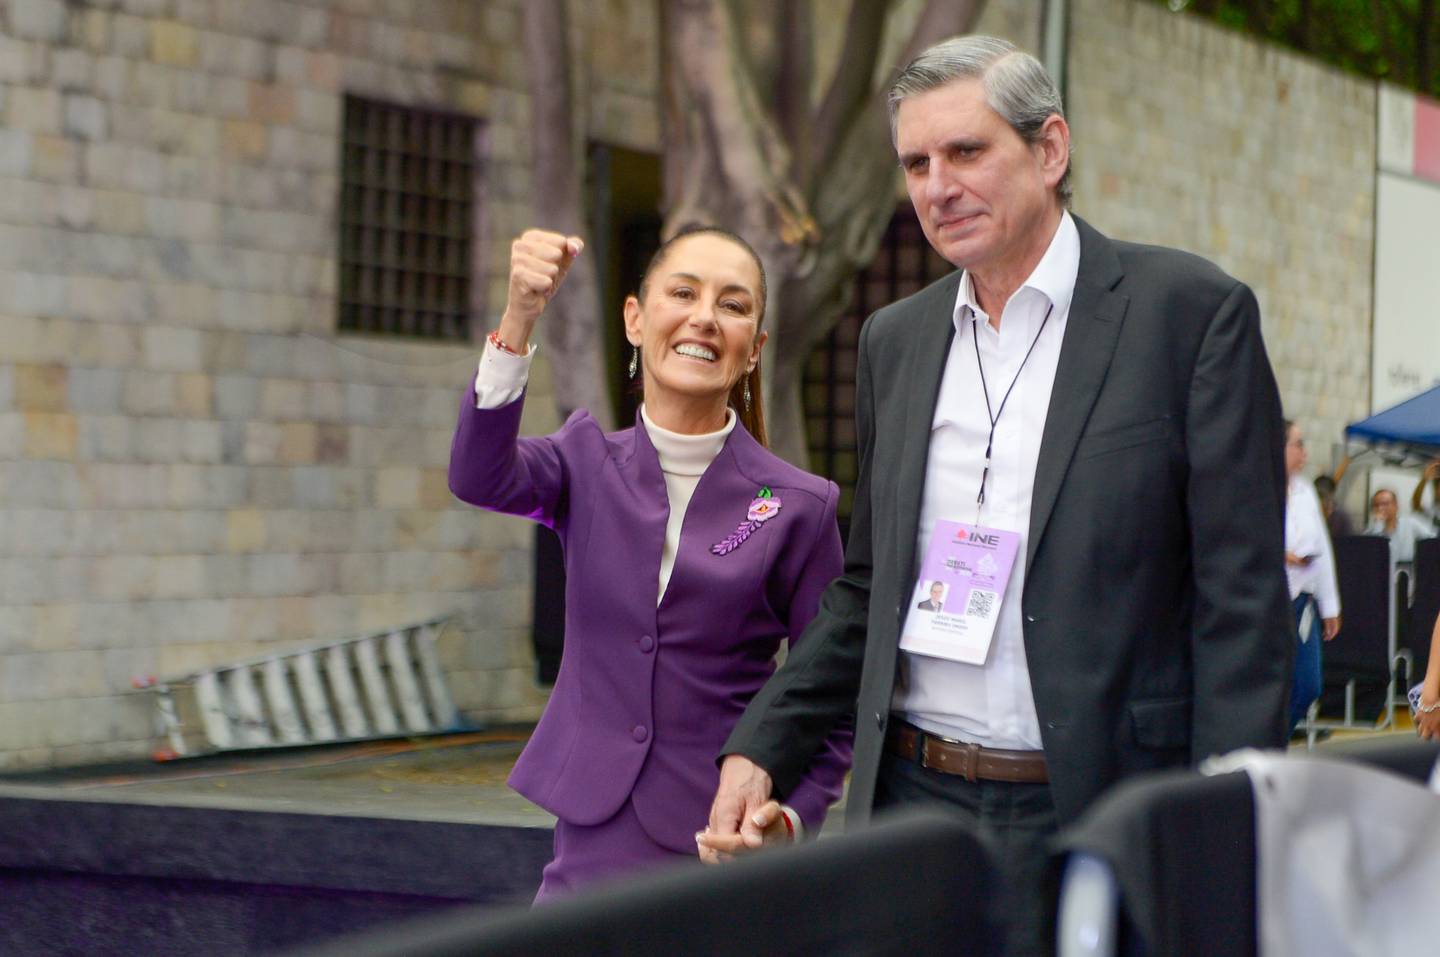 Los candidatos a la Presidencia de la República arribaron al Centro Cultural Tlatelolco, donde se efectuó el tercer y último debate (Foto: NICOLÁS TAVIRA)